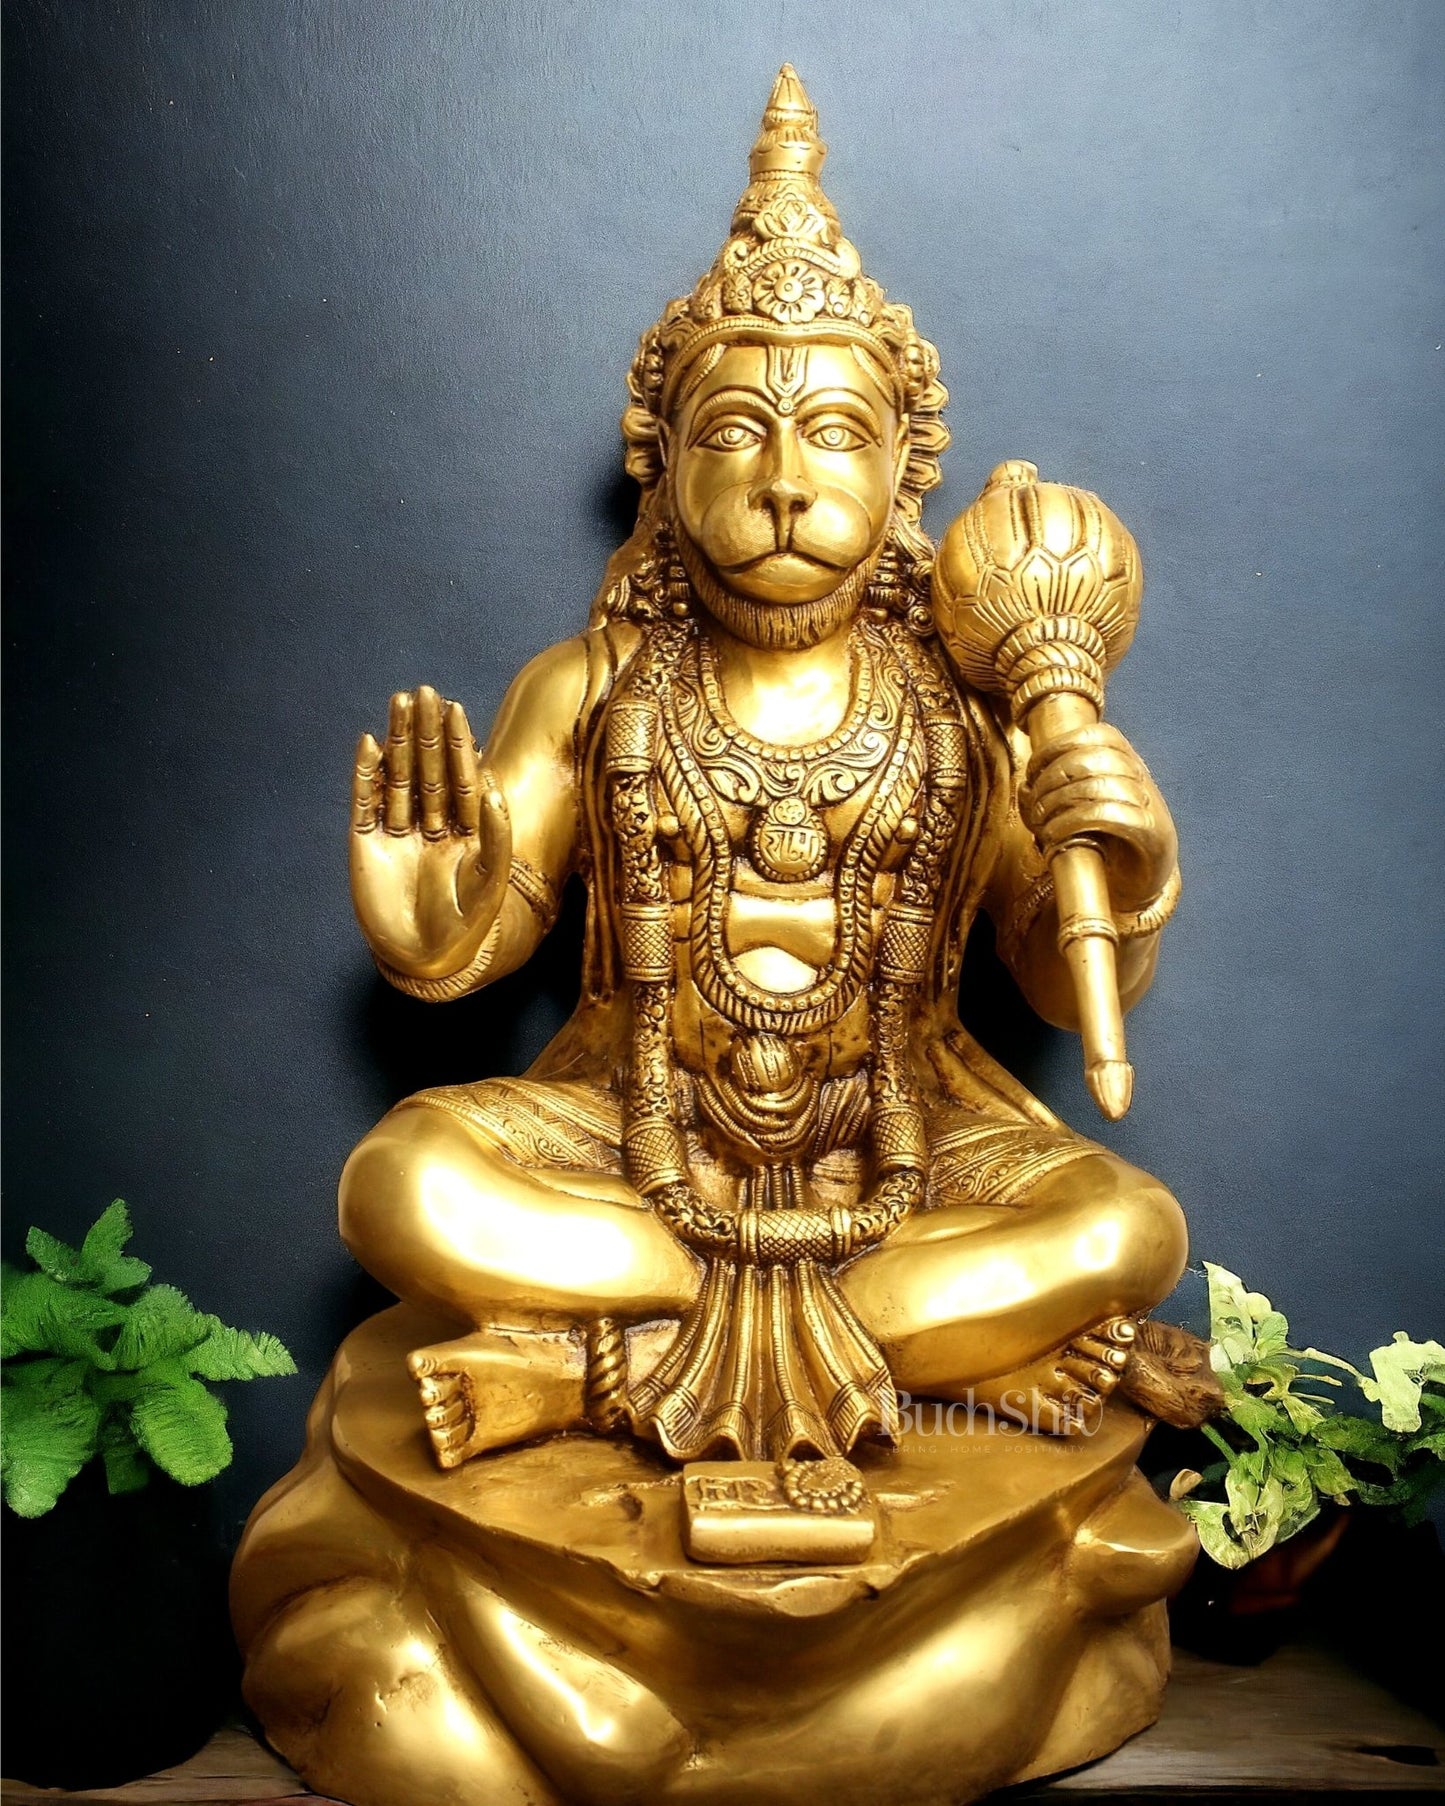 Crossed Leg Brass Hanuman Statue - 20 inch - Budhshiv.com